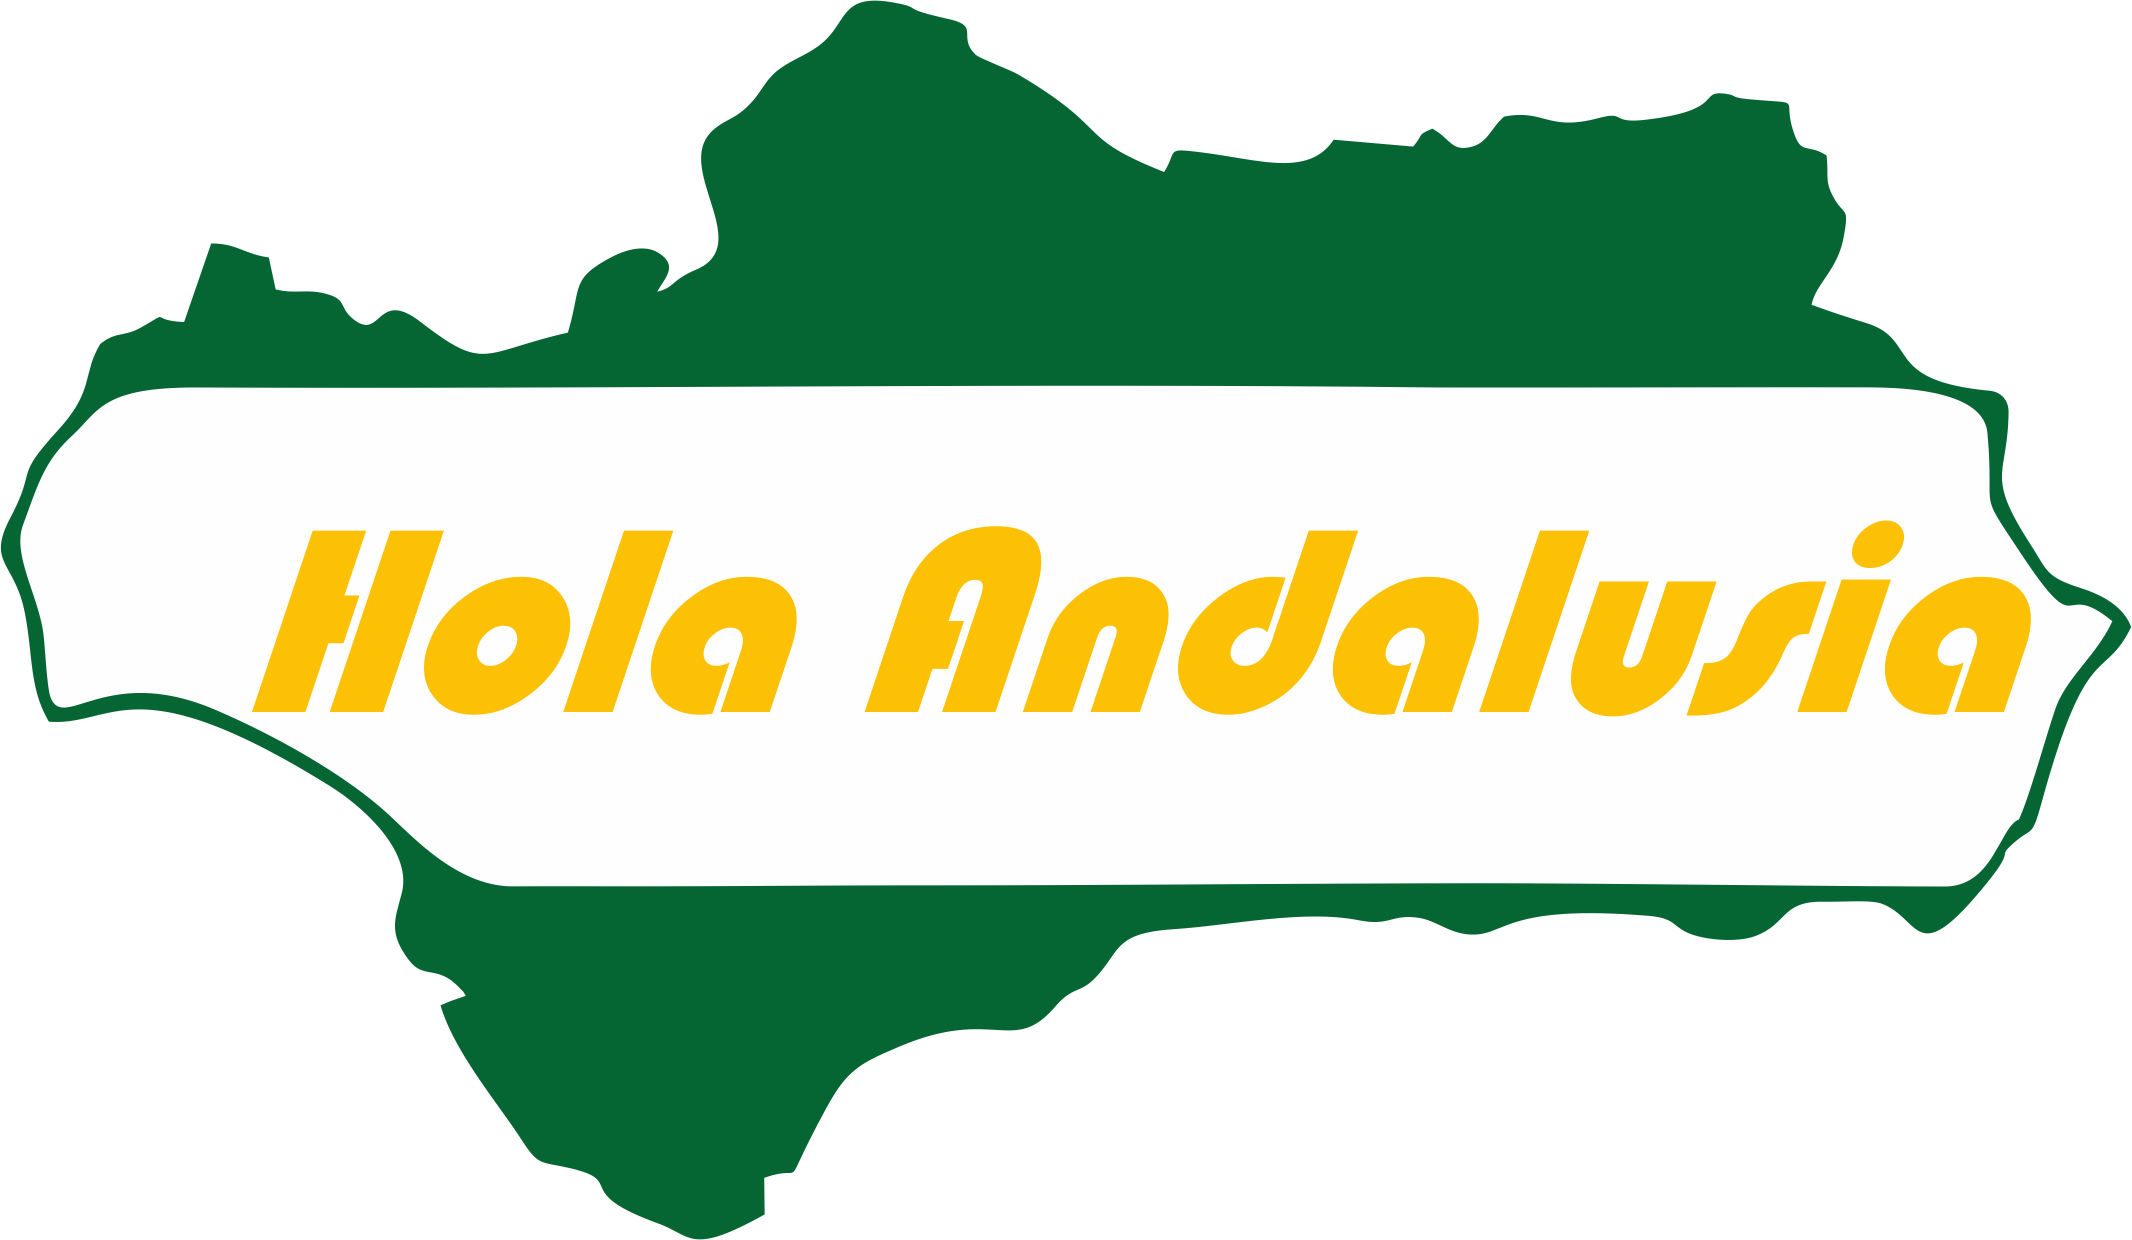 Hola Andalusia